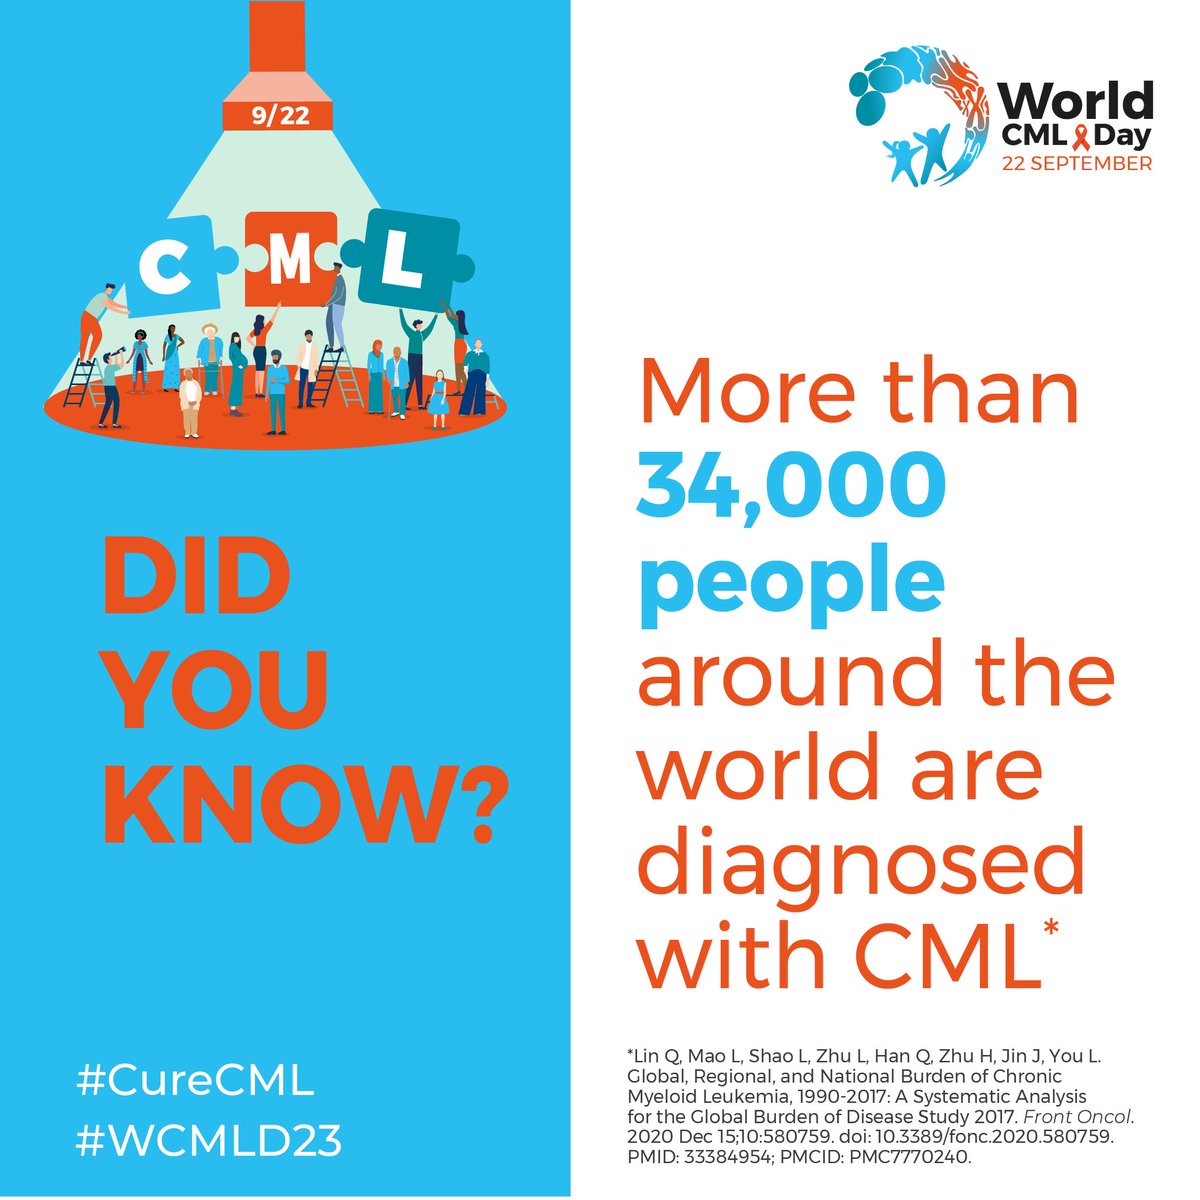 bugün dünya KML günü!
today is world CML day!
9/22 t(9;22)
#WCMLD23
#CureCML
 
@cmlnet @icmlf @LMC_PACIENTES